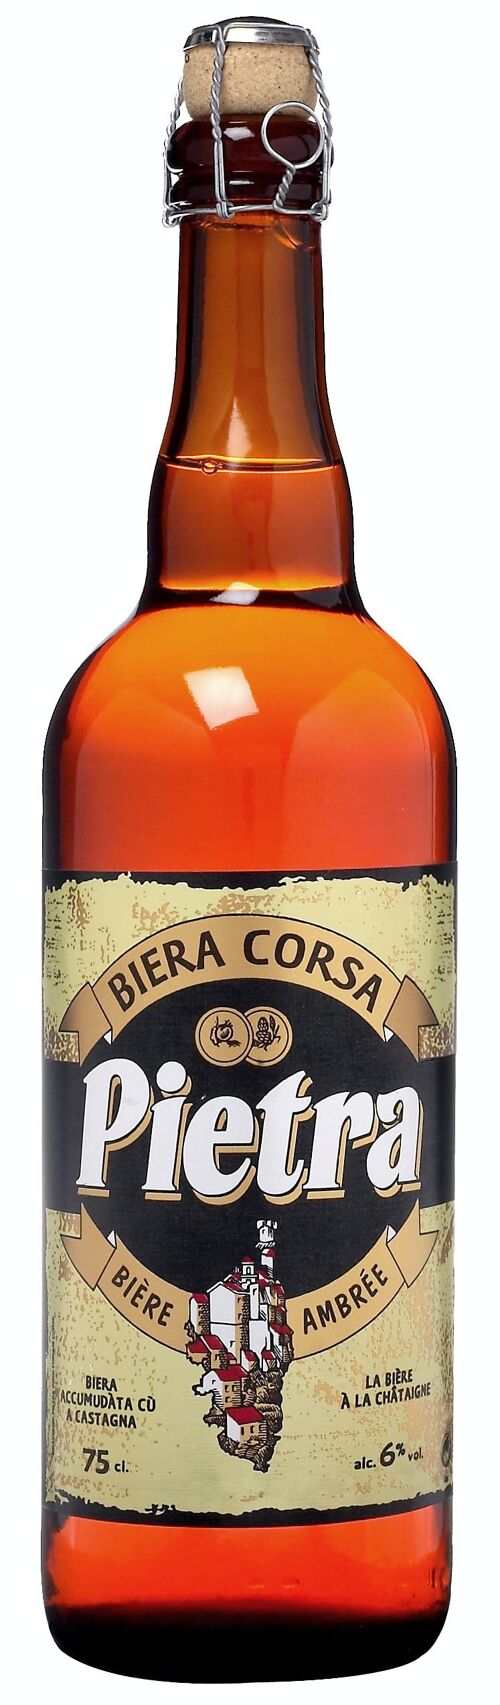 Bière artisanale Pietra - 75cl